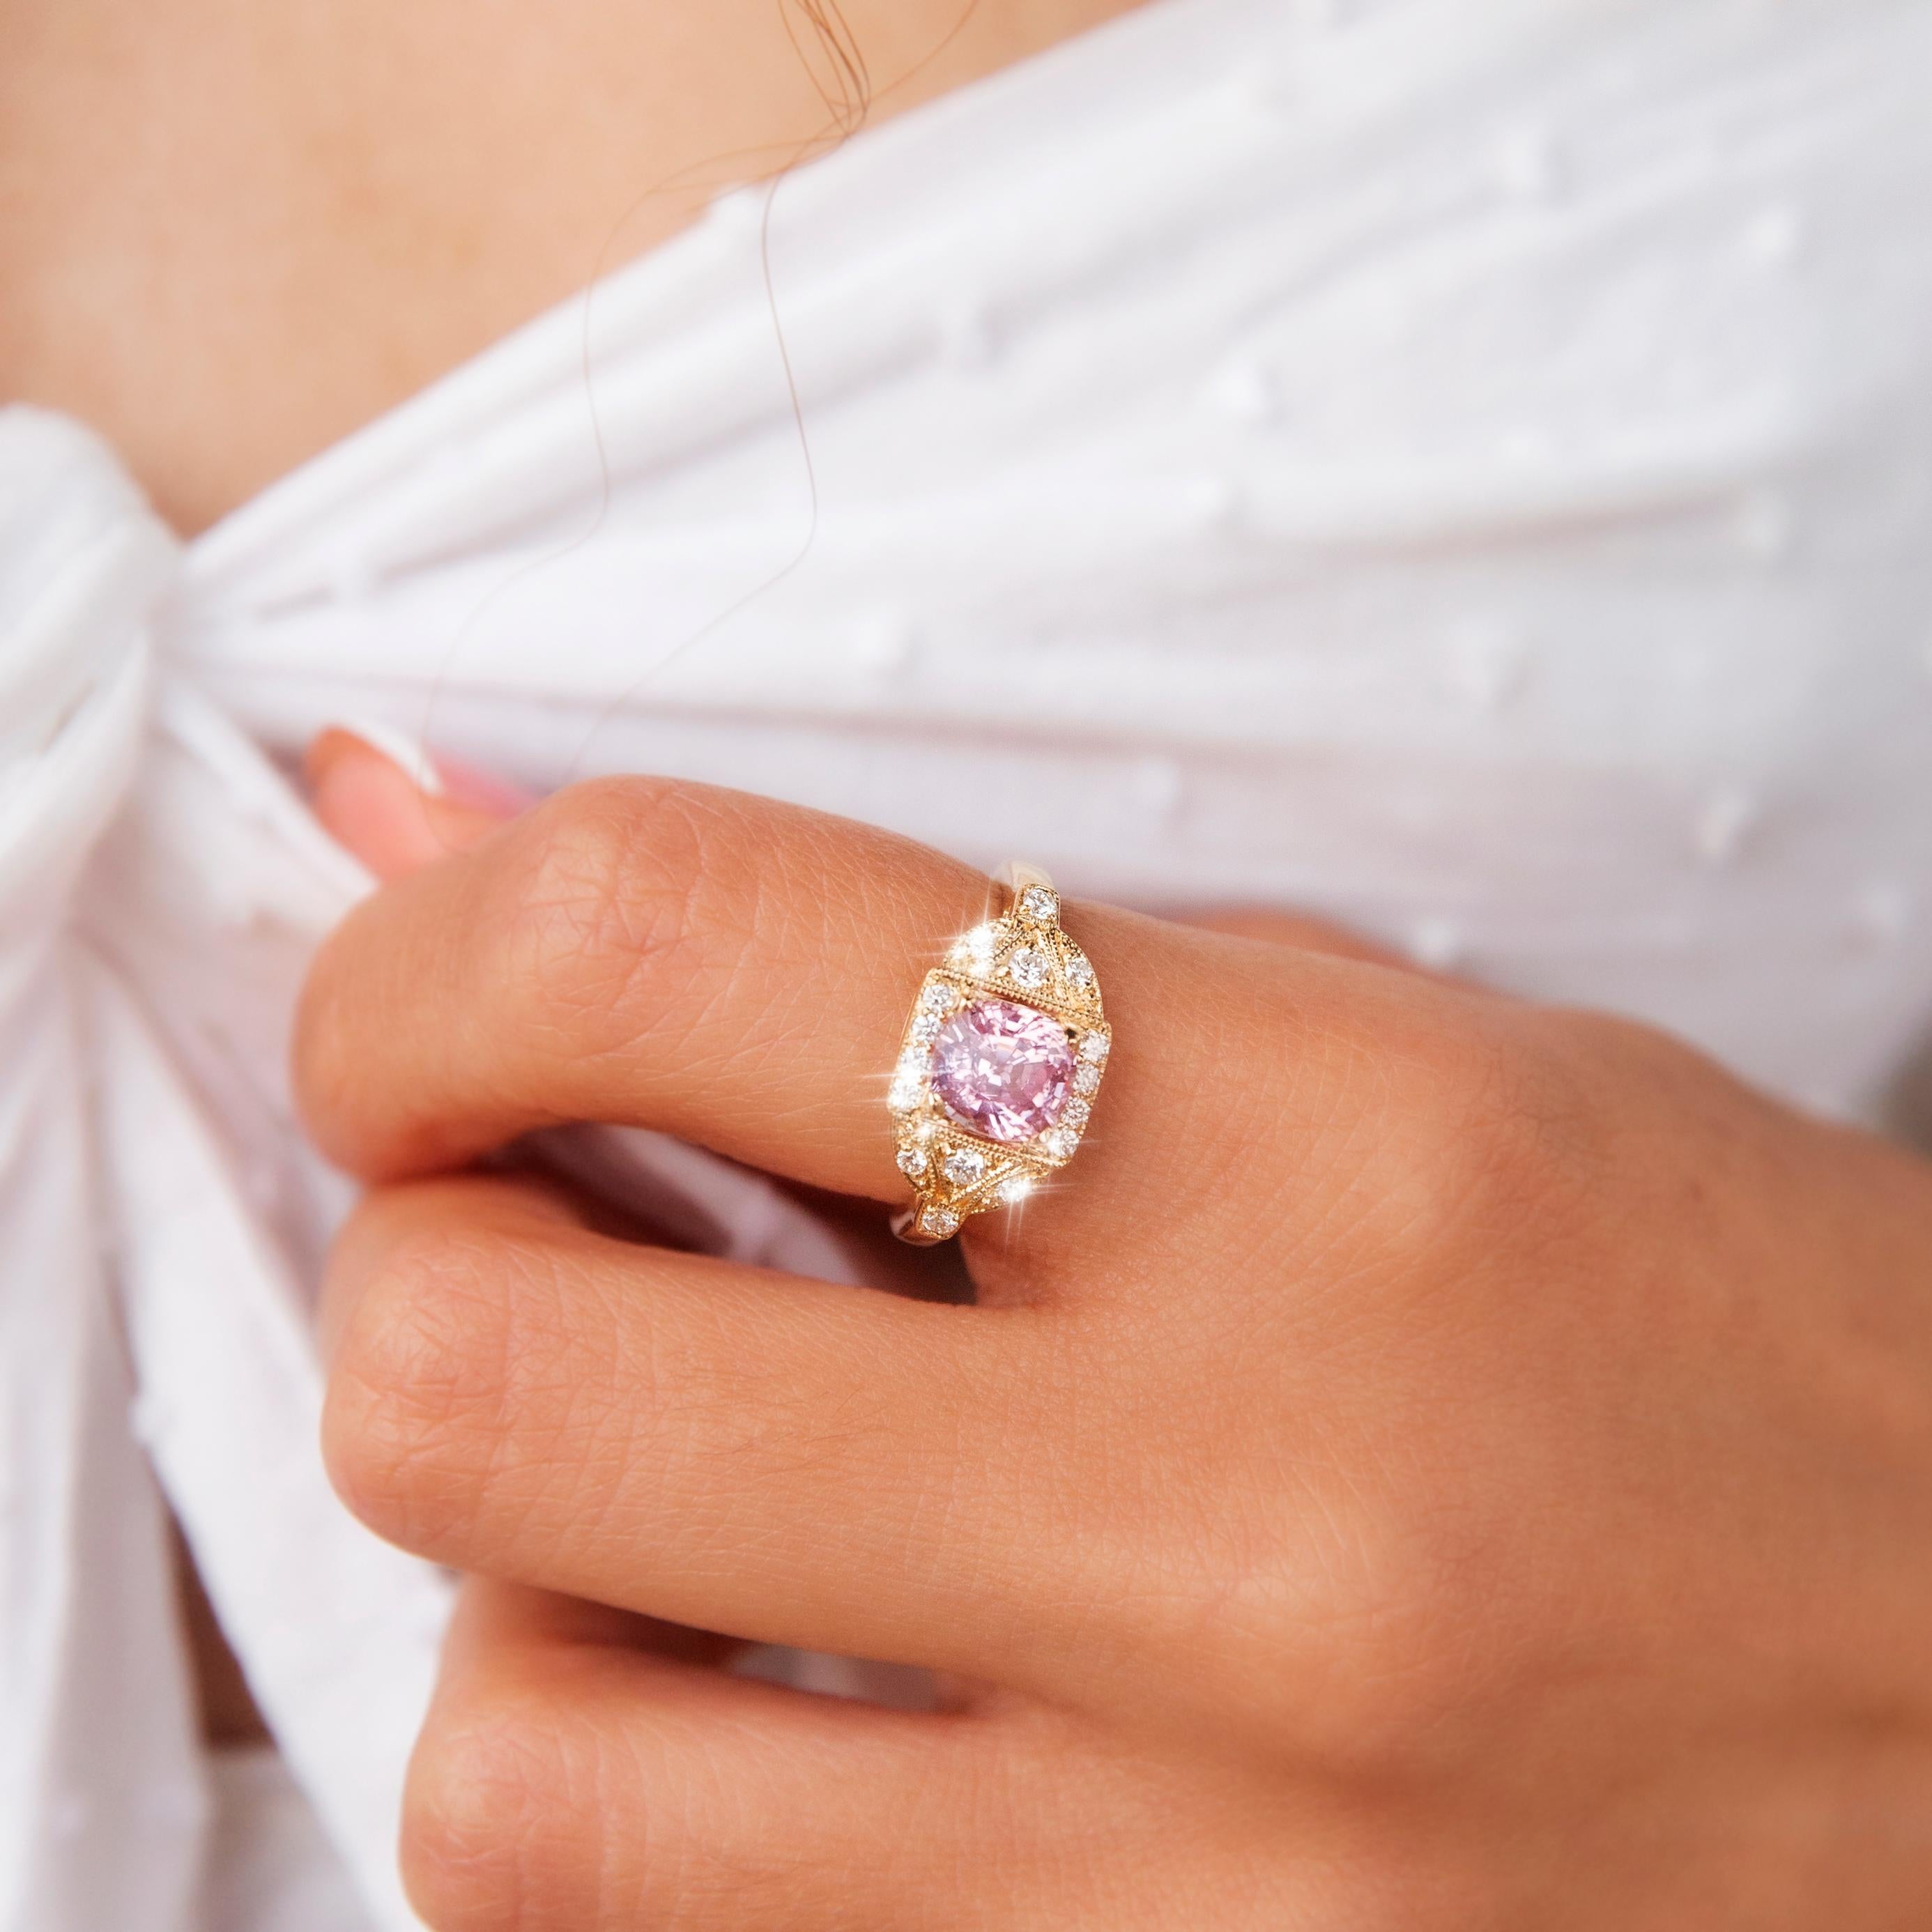 Forgée en or jaune 18 carats, cette opulente bague à grappes contemporaine présente un spinelle rose pâle de taille ronde dans une monture à perles milgrain incrustées de diamants. Elle a été baptisée l'Anneau de Mariah. Son design classique en fait